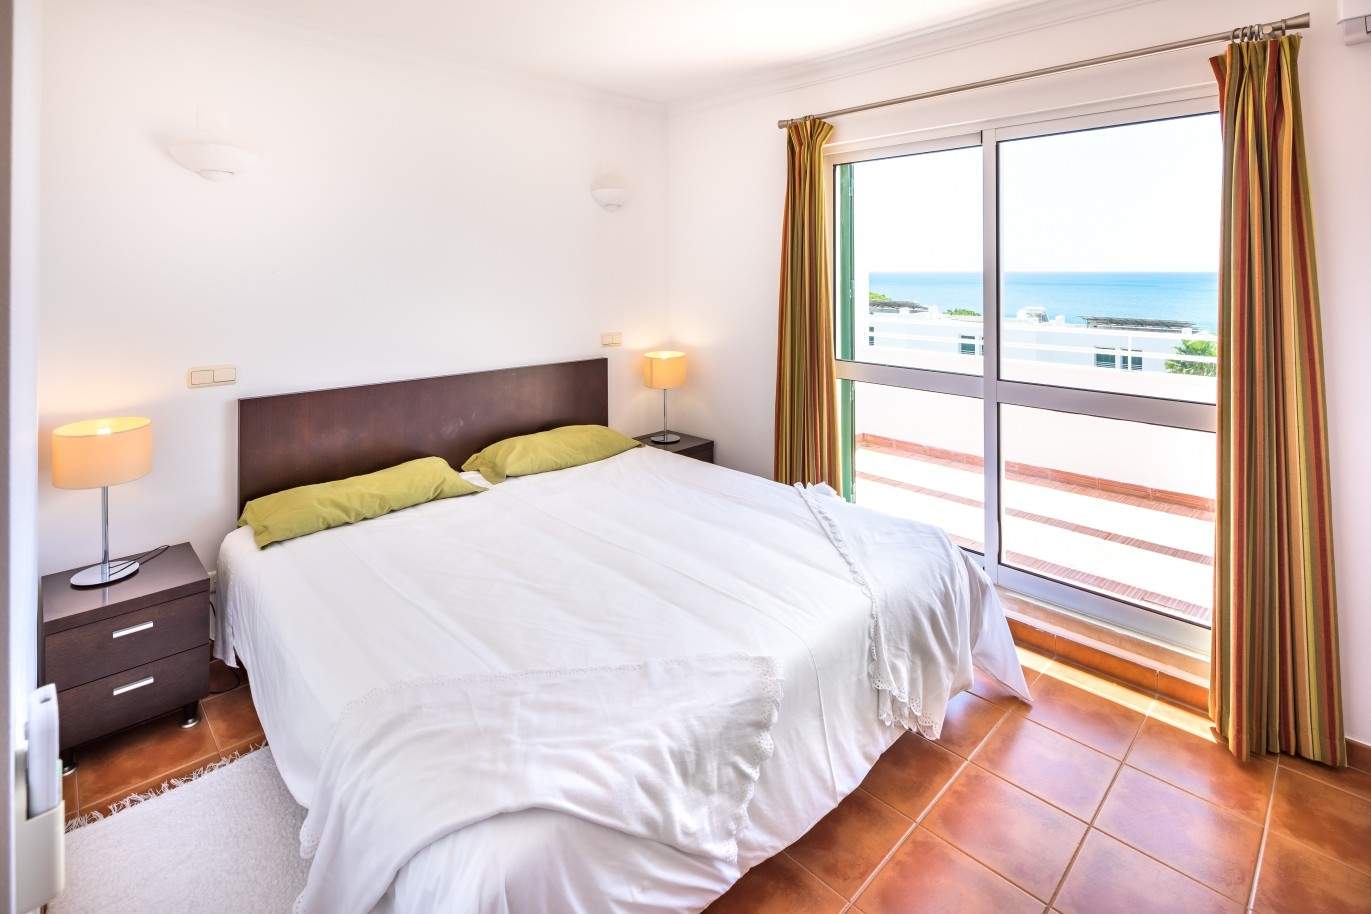 Venda de apartamento com vista mar em Albufeira, Algarve_61833